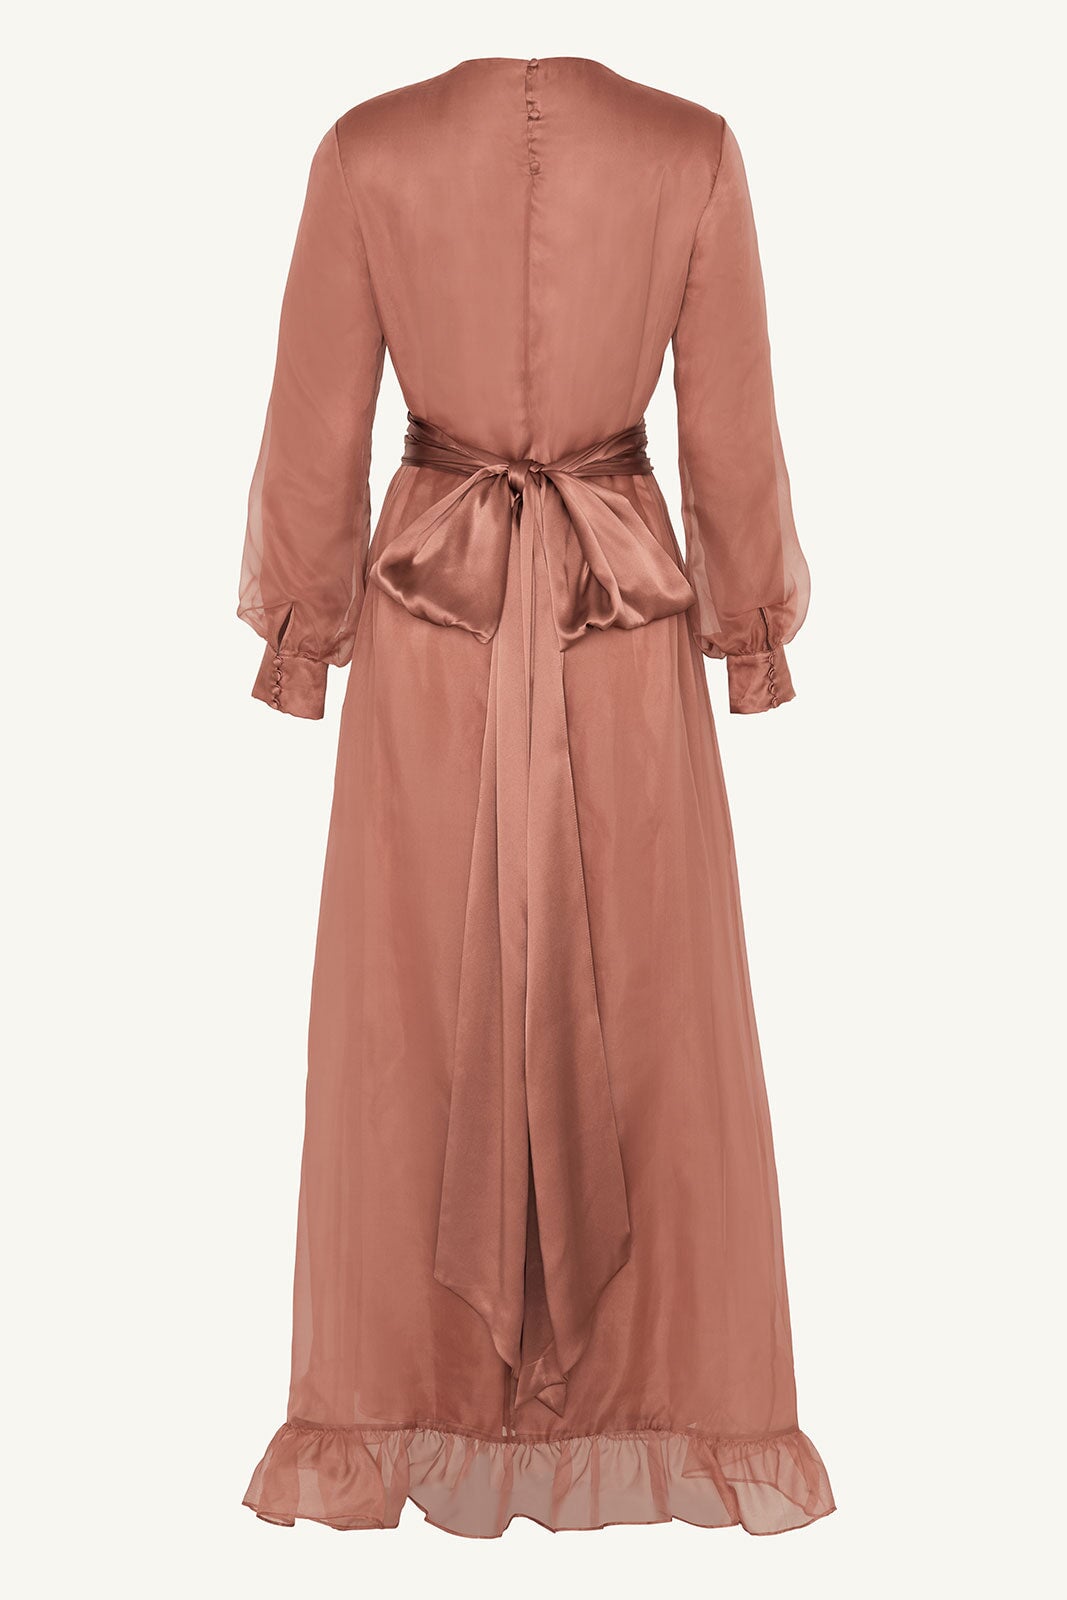 Silk Organza Ruffle Trim Maxi Dress - Cedar Wood Clothing saigonodysseyhotel 